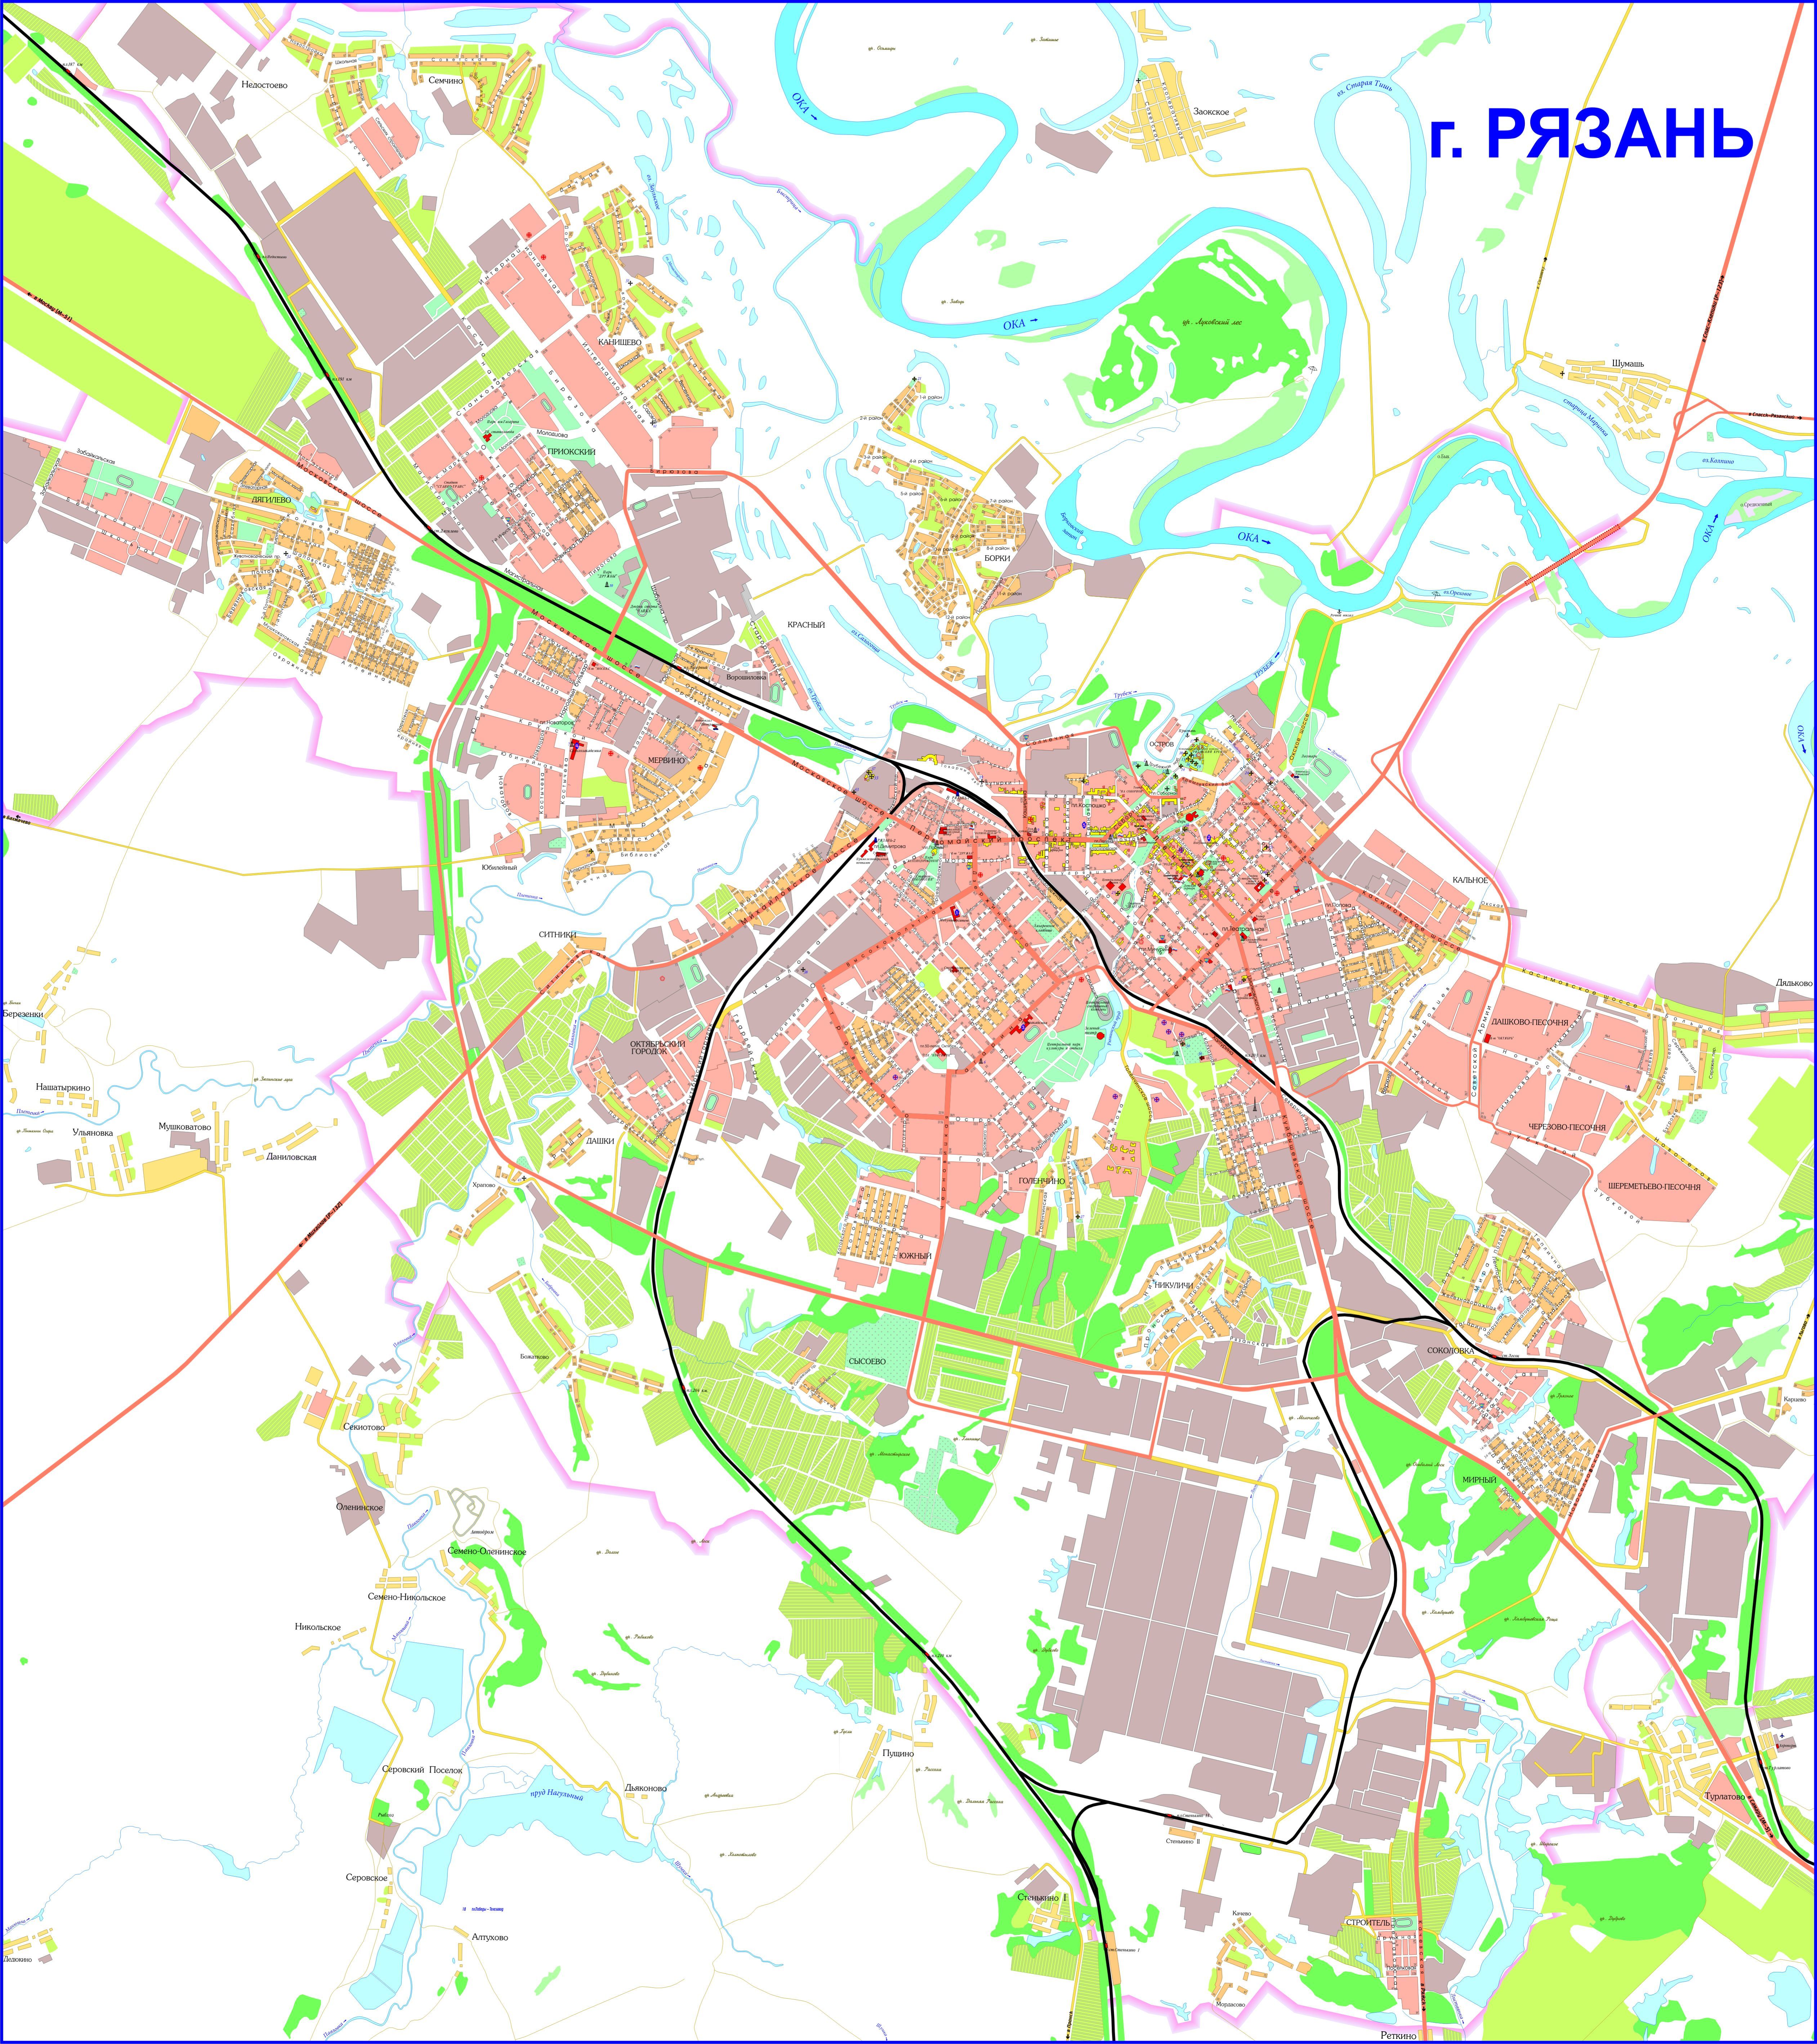 Карта Рязани (Россия) на русском языке, расположение на карте мира сгородами, метро, центра, районов и округов